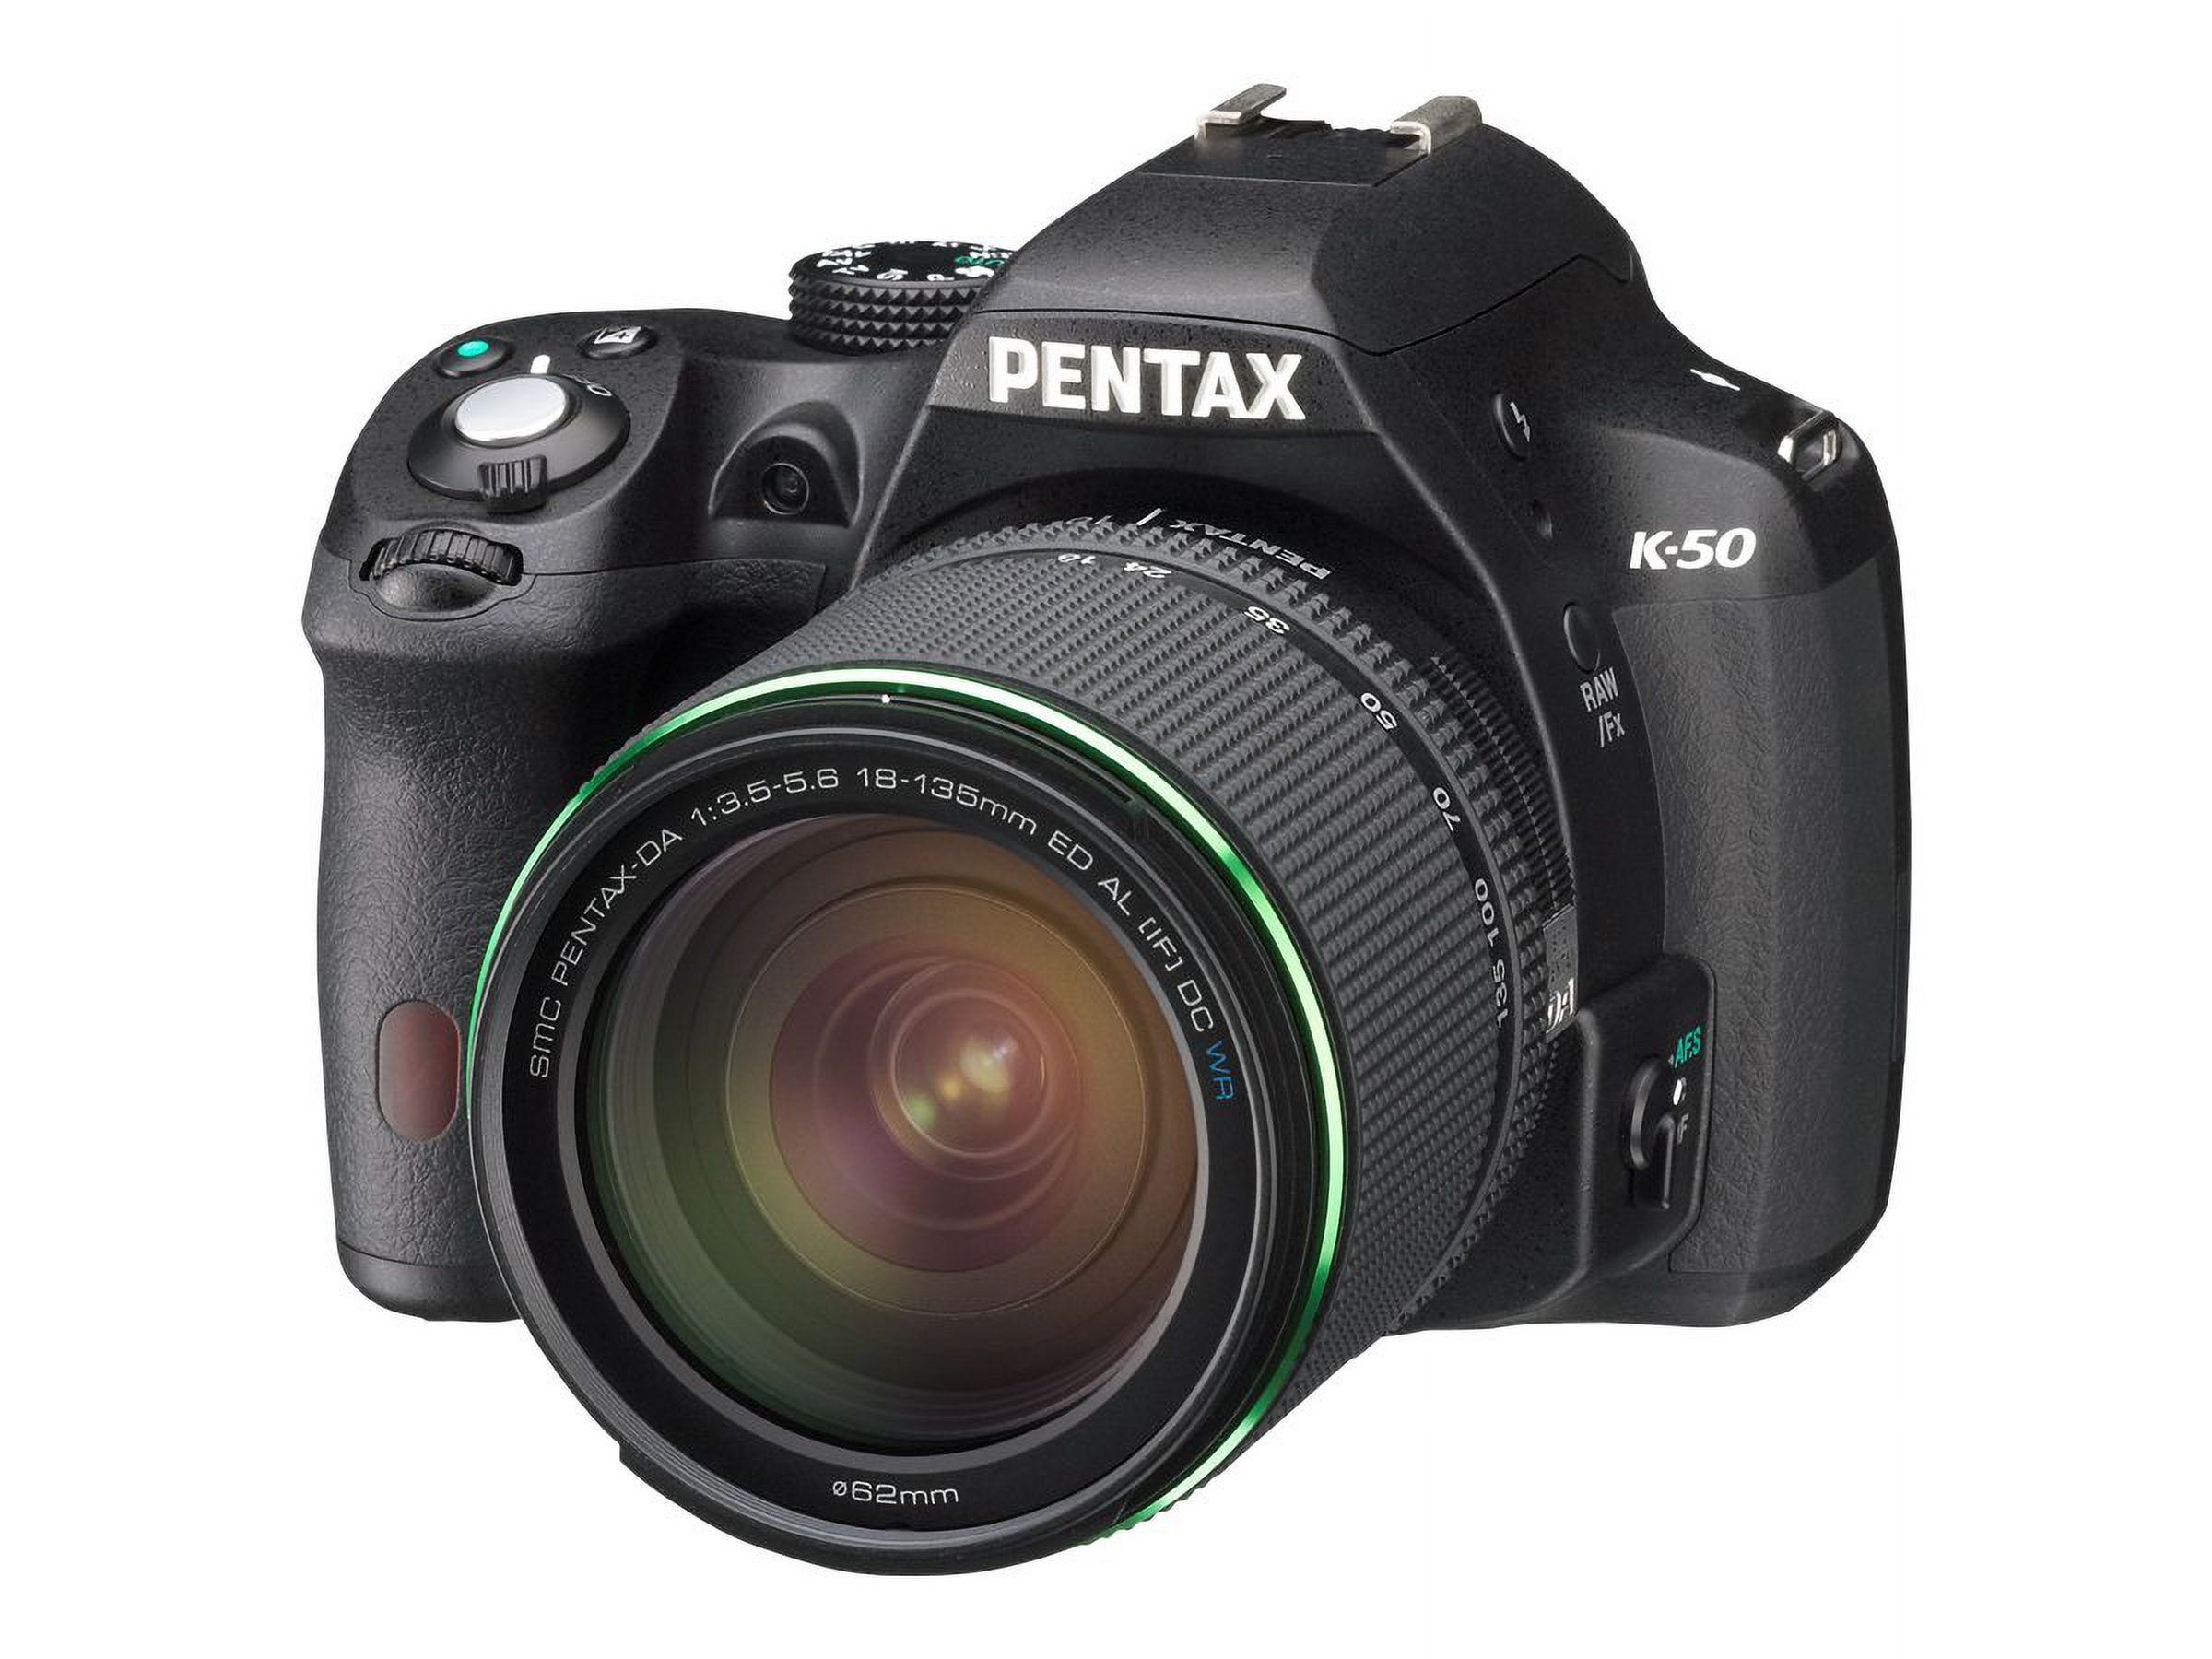 Pentax K-50 16.3 Megapixel Digital SLR Camera Body Only, Black - image 2 of 11